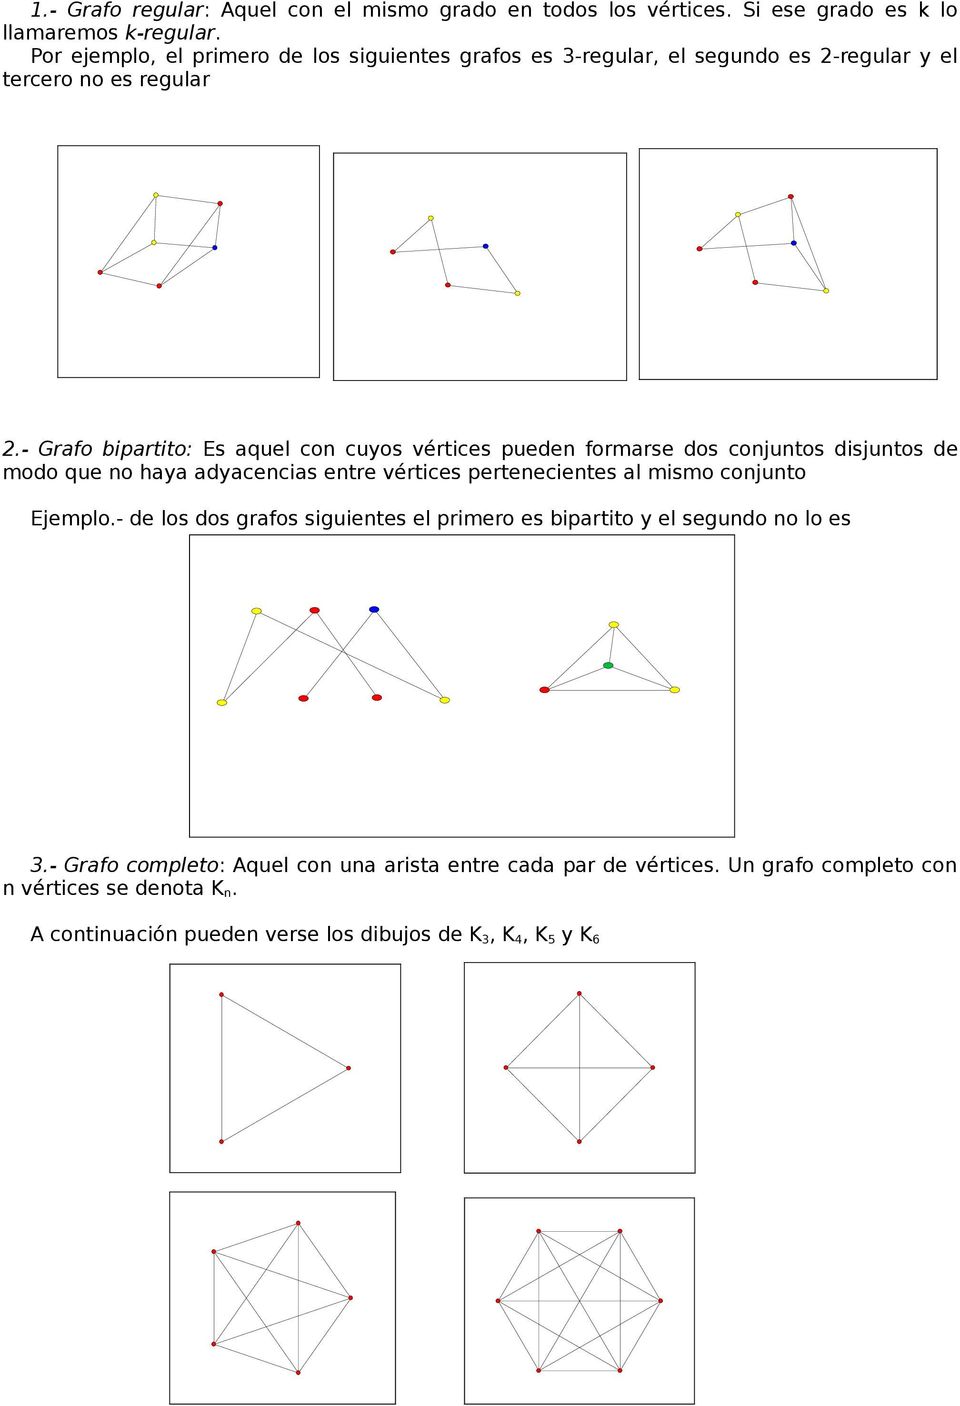 - Grafo bipartito: Es aquel con cuyos vértices pueden formarse dos conjuntos disjuntos de modo que no haya adyacencias entre vértices pertenecientes al mismo